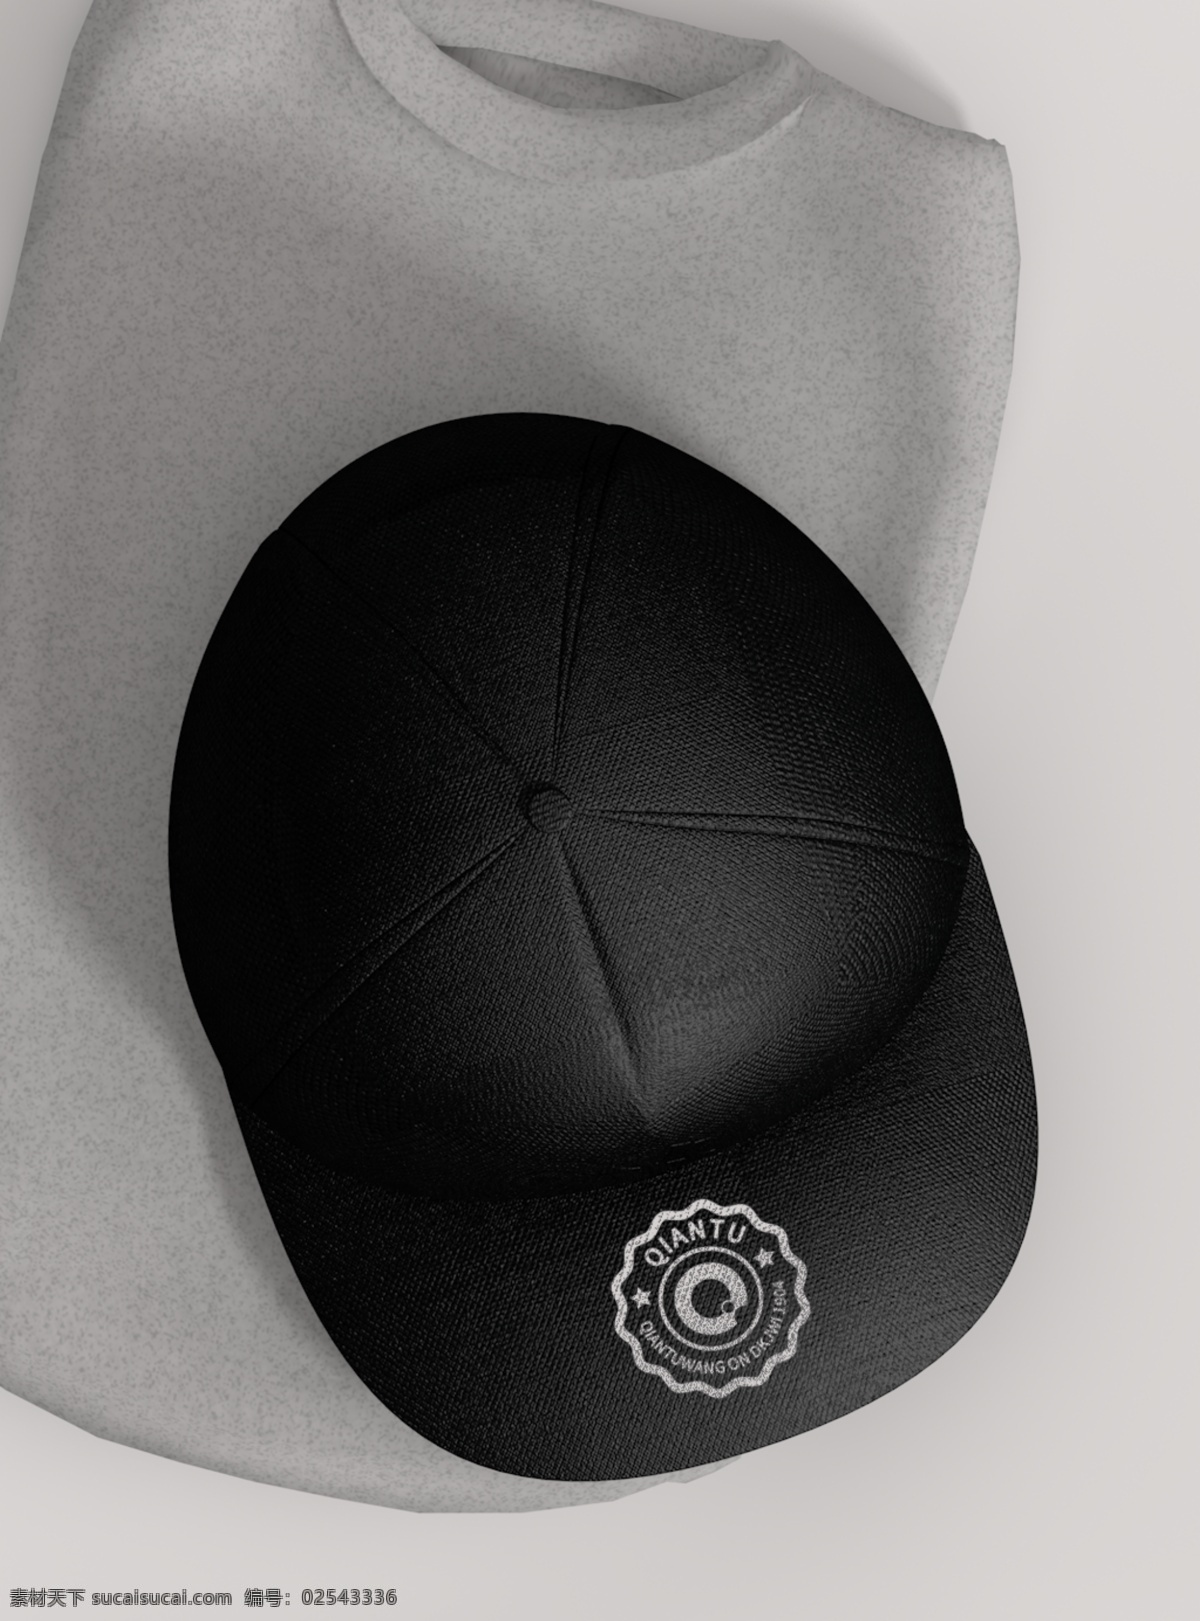 原创 模型 帽子 鸭舌帽 样机 智能图层 mockup 一键贴图 logo 贴图 服饰样机